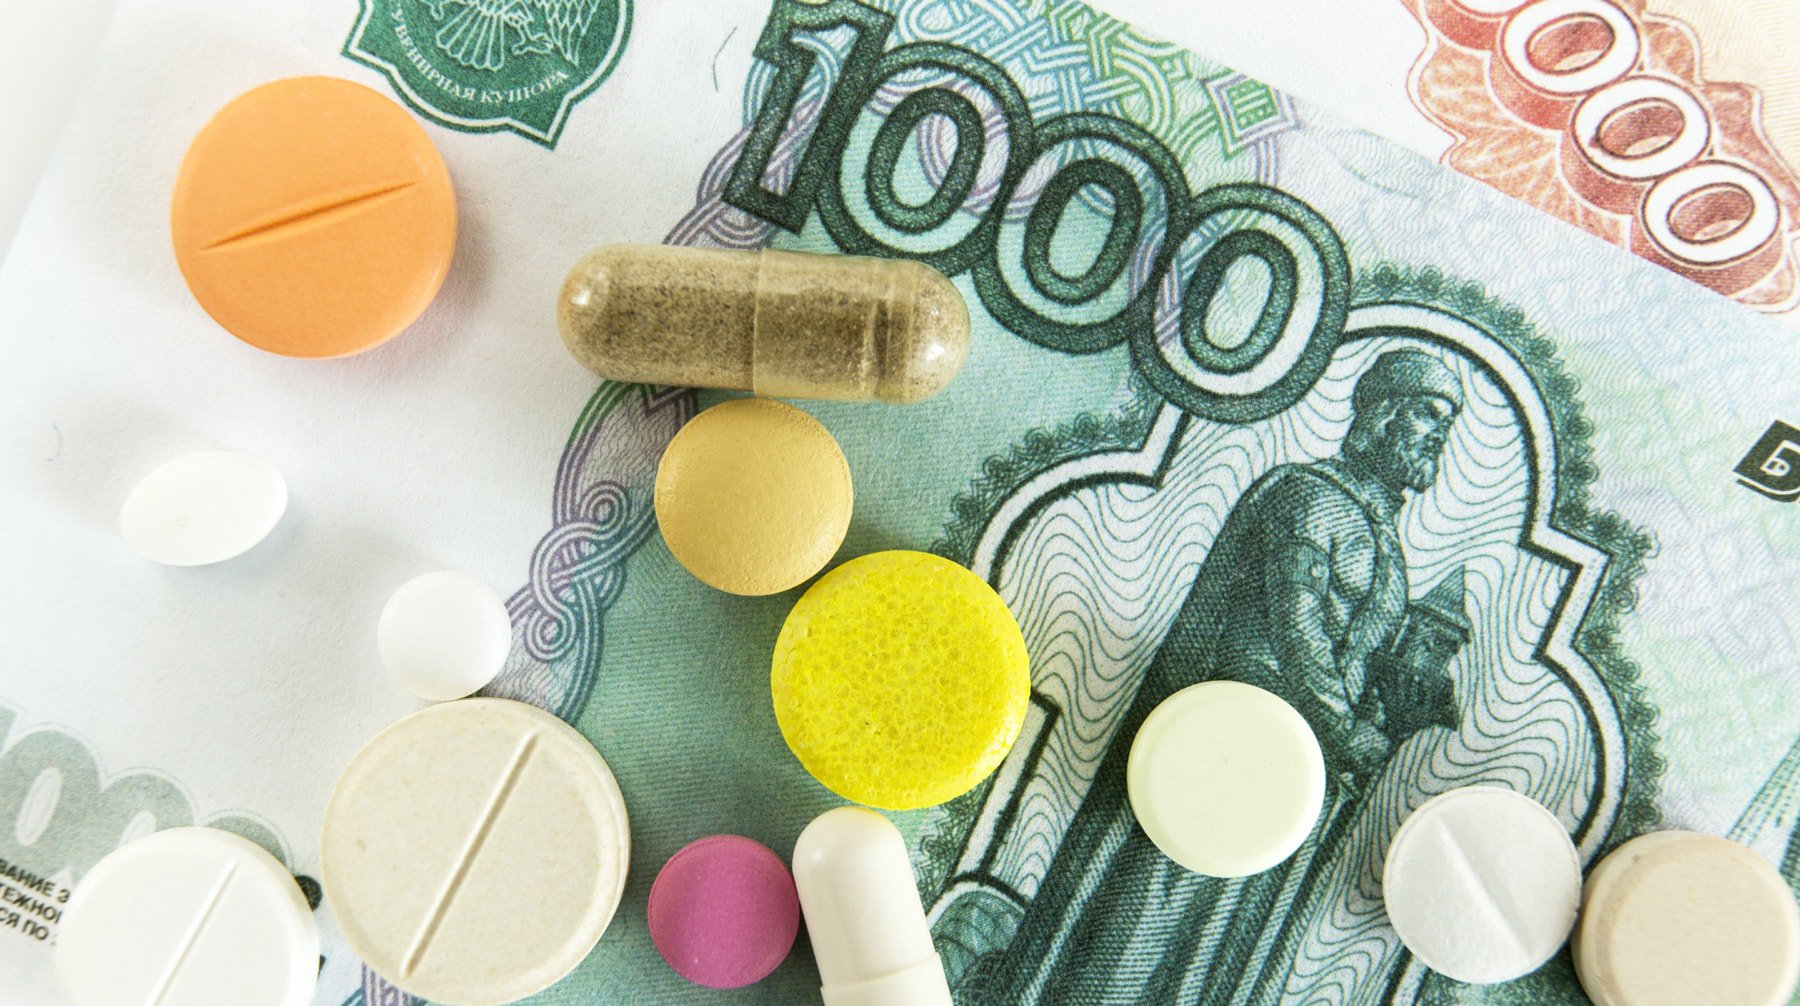 Dailystorm - Инициатива правительства может лишить страну дешевых лекарств